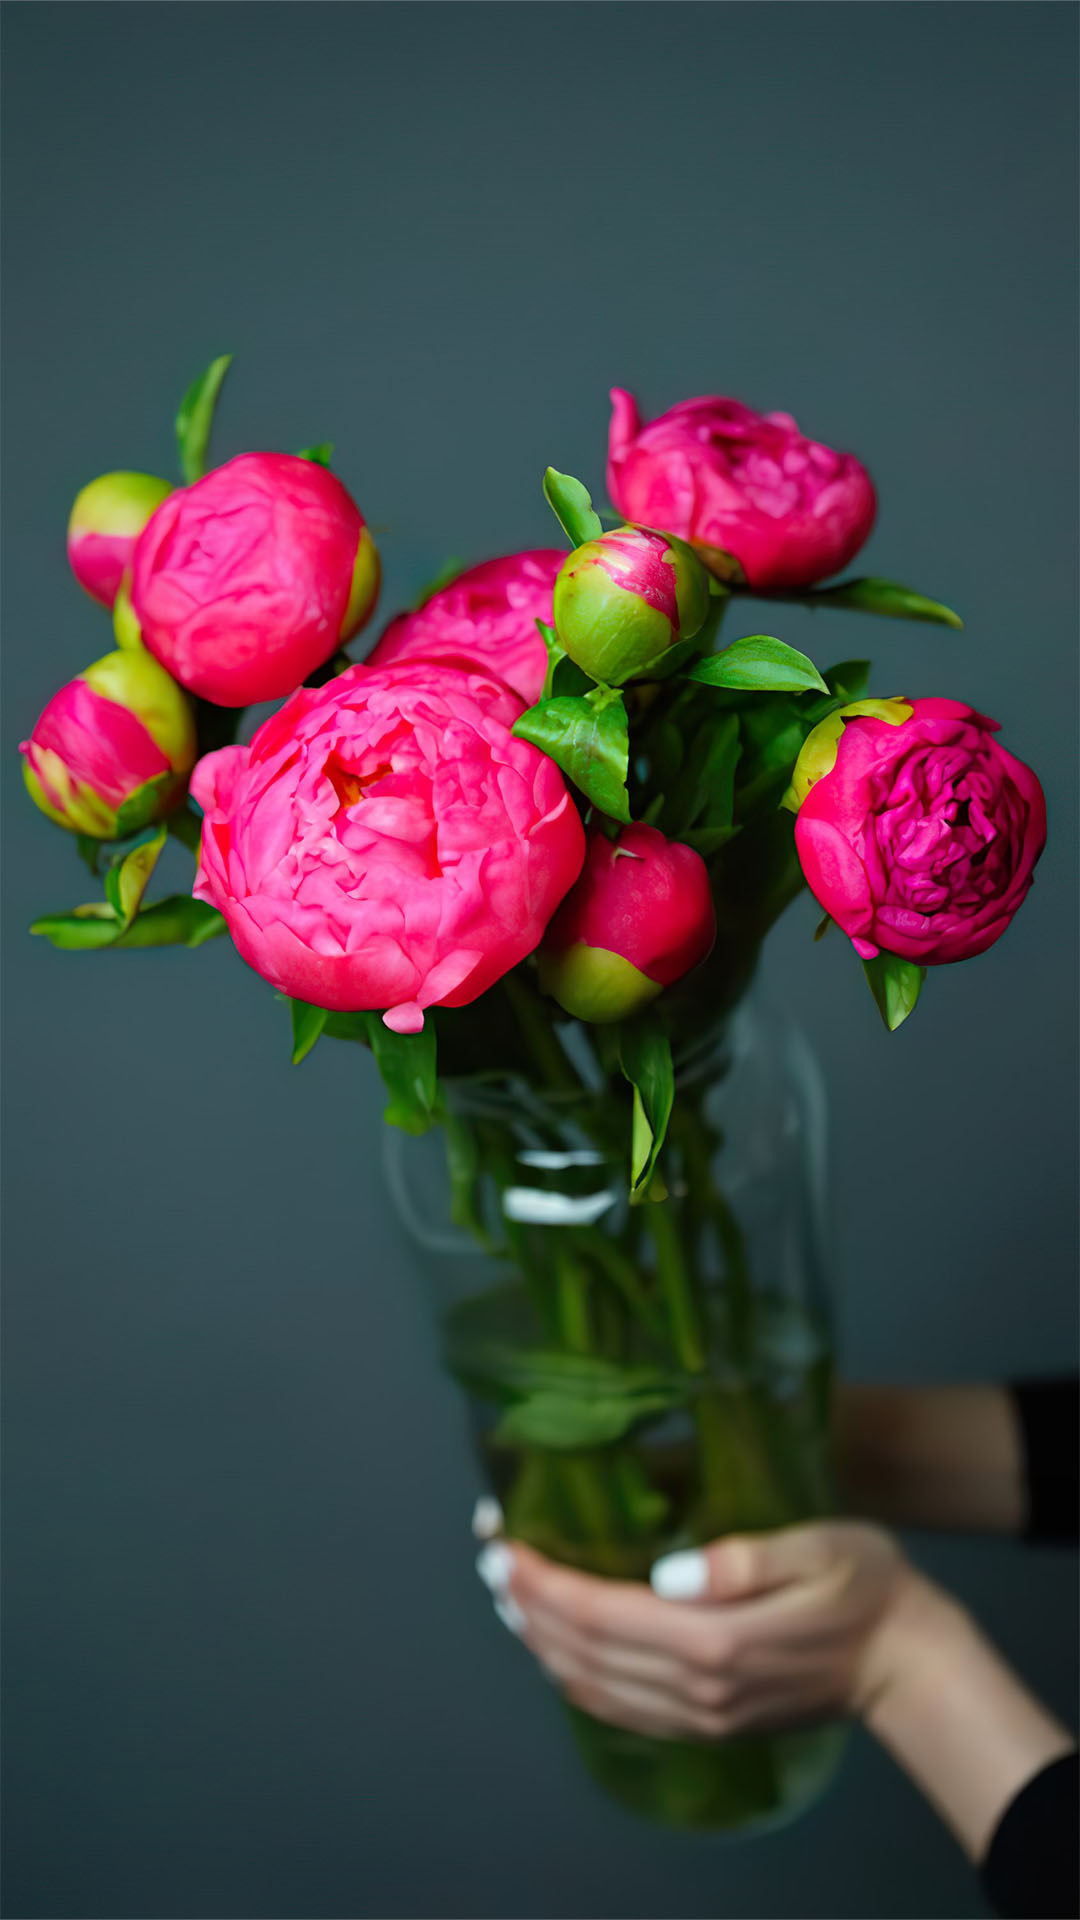 Dành cho những ai yêu thích vẻ đẹp của hoa mẫu đơn đỏ, hãy chiêm ngưỡng ngay hình ảnh hoa mẫu đơn tuyệt đẹp để cảm nhận sự nữ tính và quý phái của loài hoa này nhé!